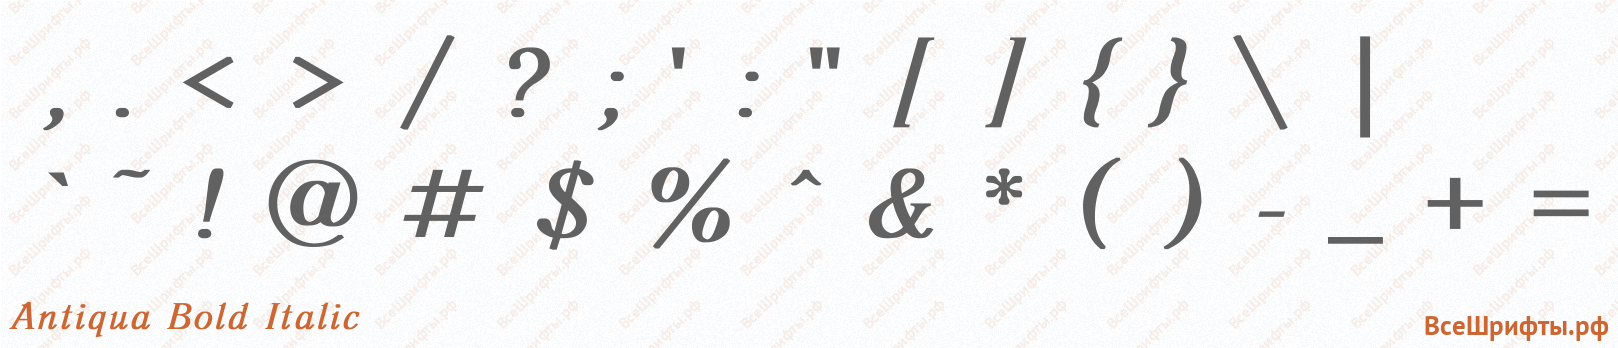 Шрифт Antiqua Bold Italic со знаками препинания и пунктуации